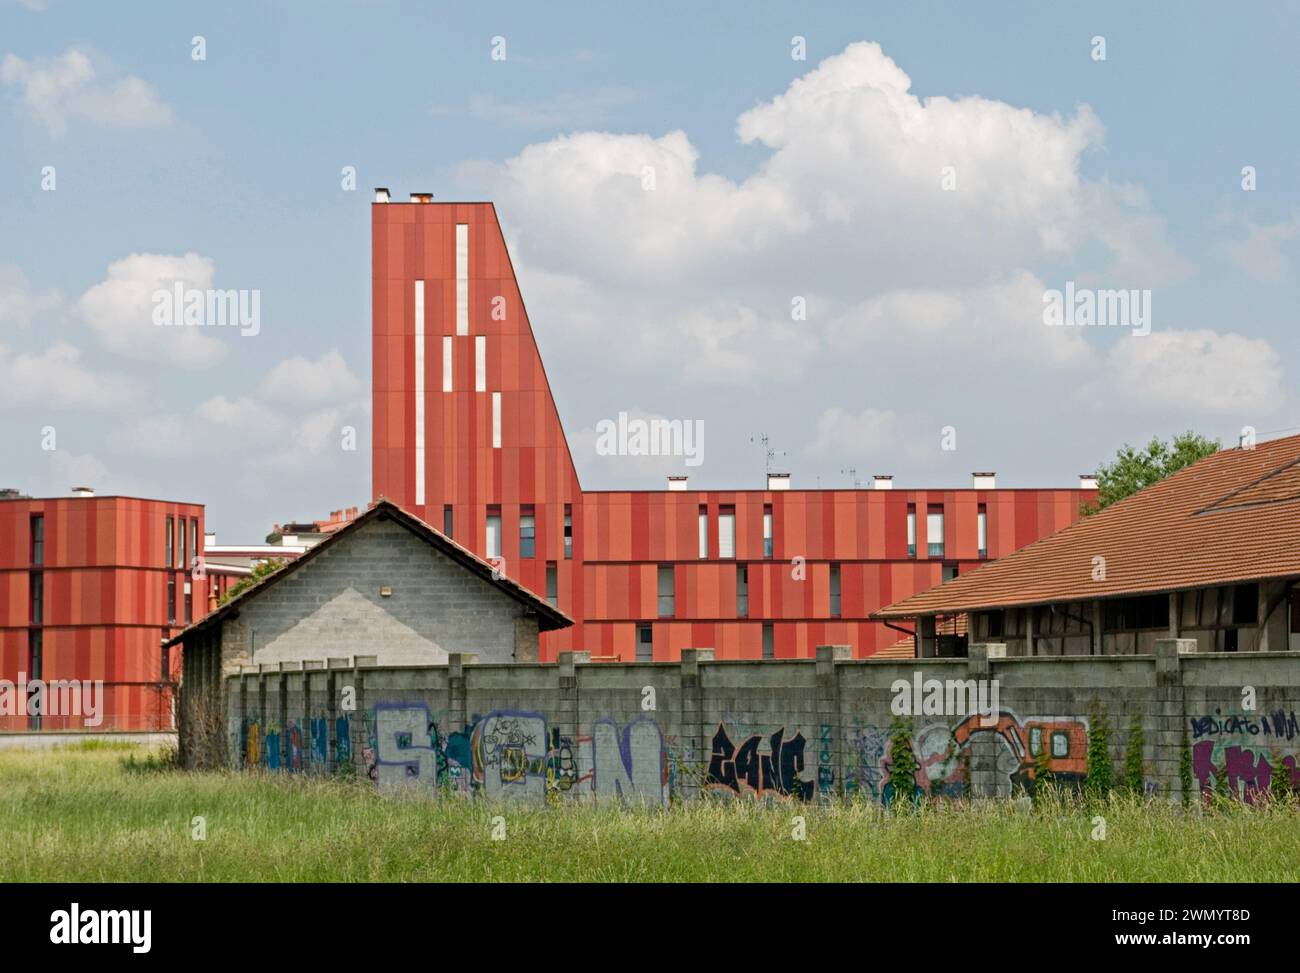 Construcciones nuevas y antiguas en el área suburbana, Milán, Italia Foto de stock